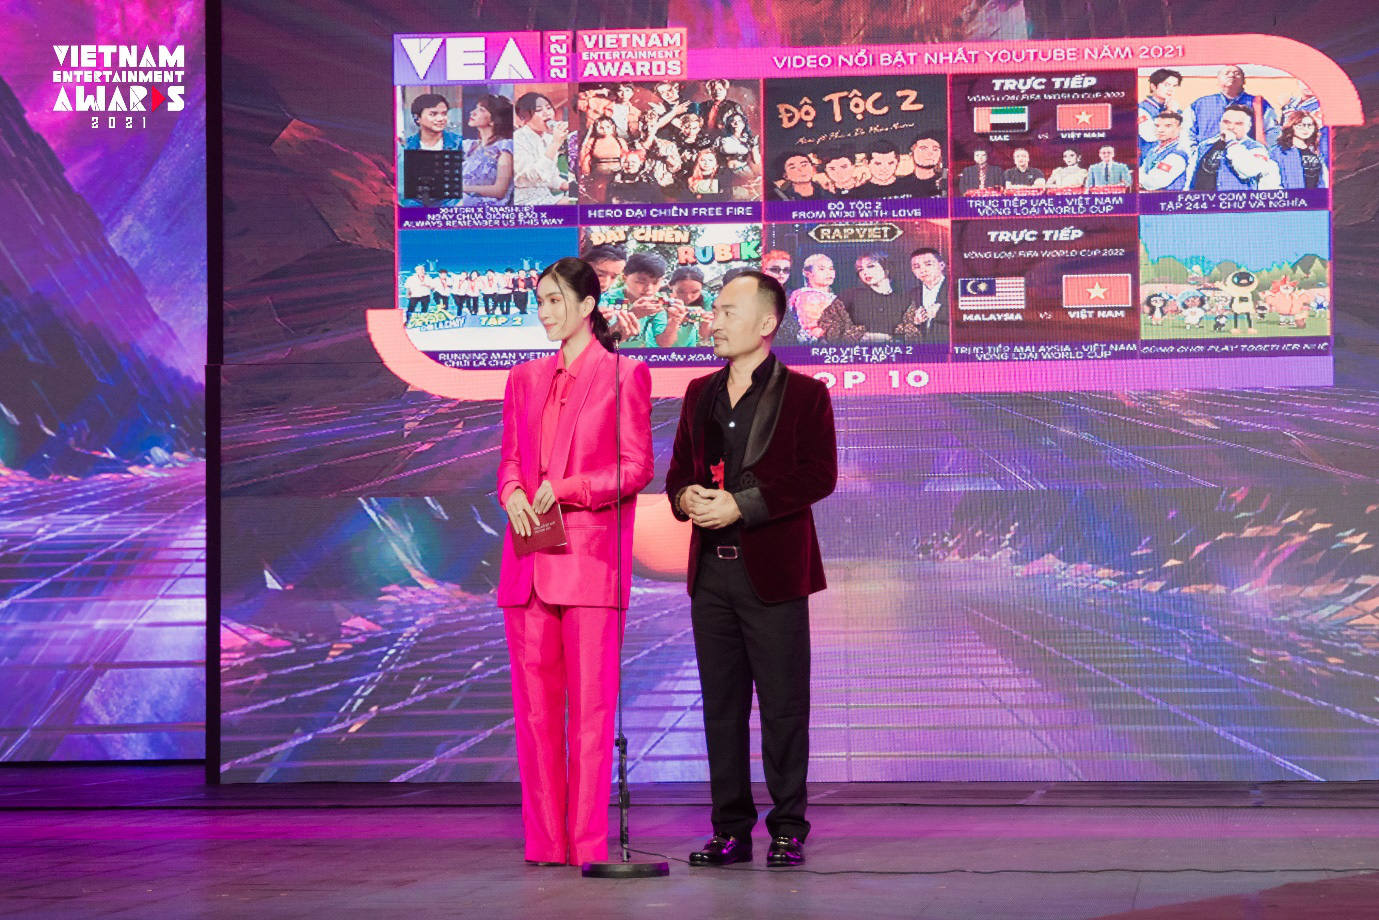 Đêm Gala Trao Giải sự kiện Vietnam Entertainment Awards 2021 - nơi những tài năng được tôn vinh - Ảnh 4.